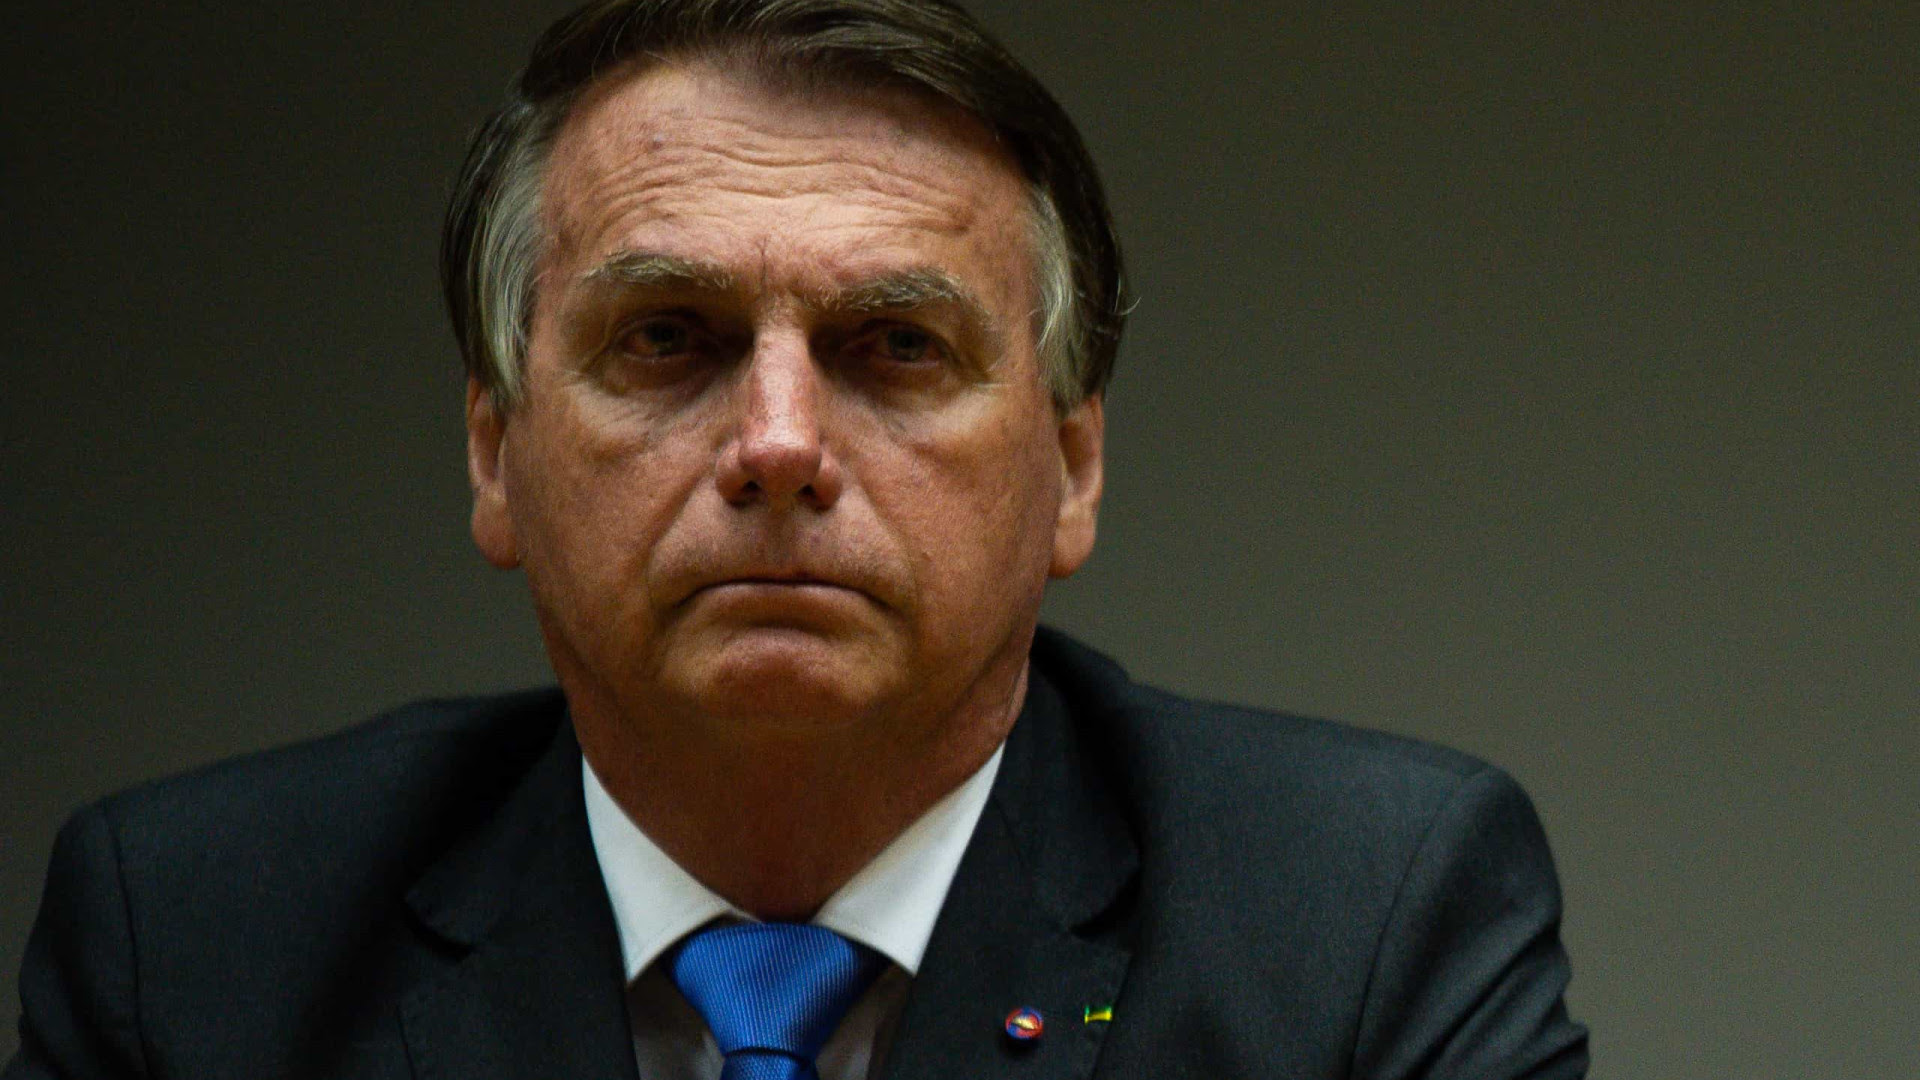 Não é a 1ª vez que morre alguém com gás lacrimogêneo, diz Bolsonaro sobre Genivaldo